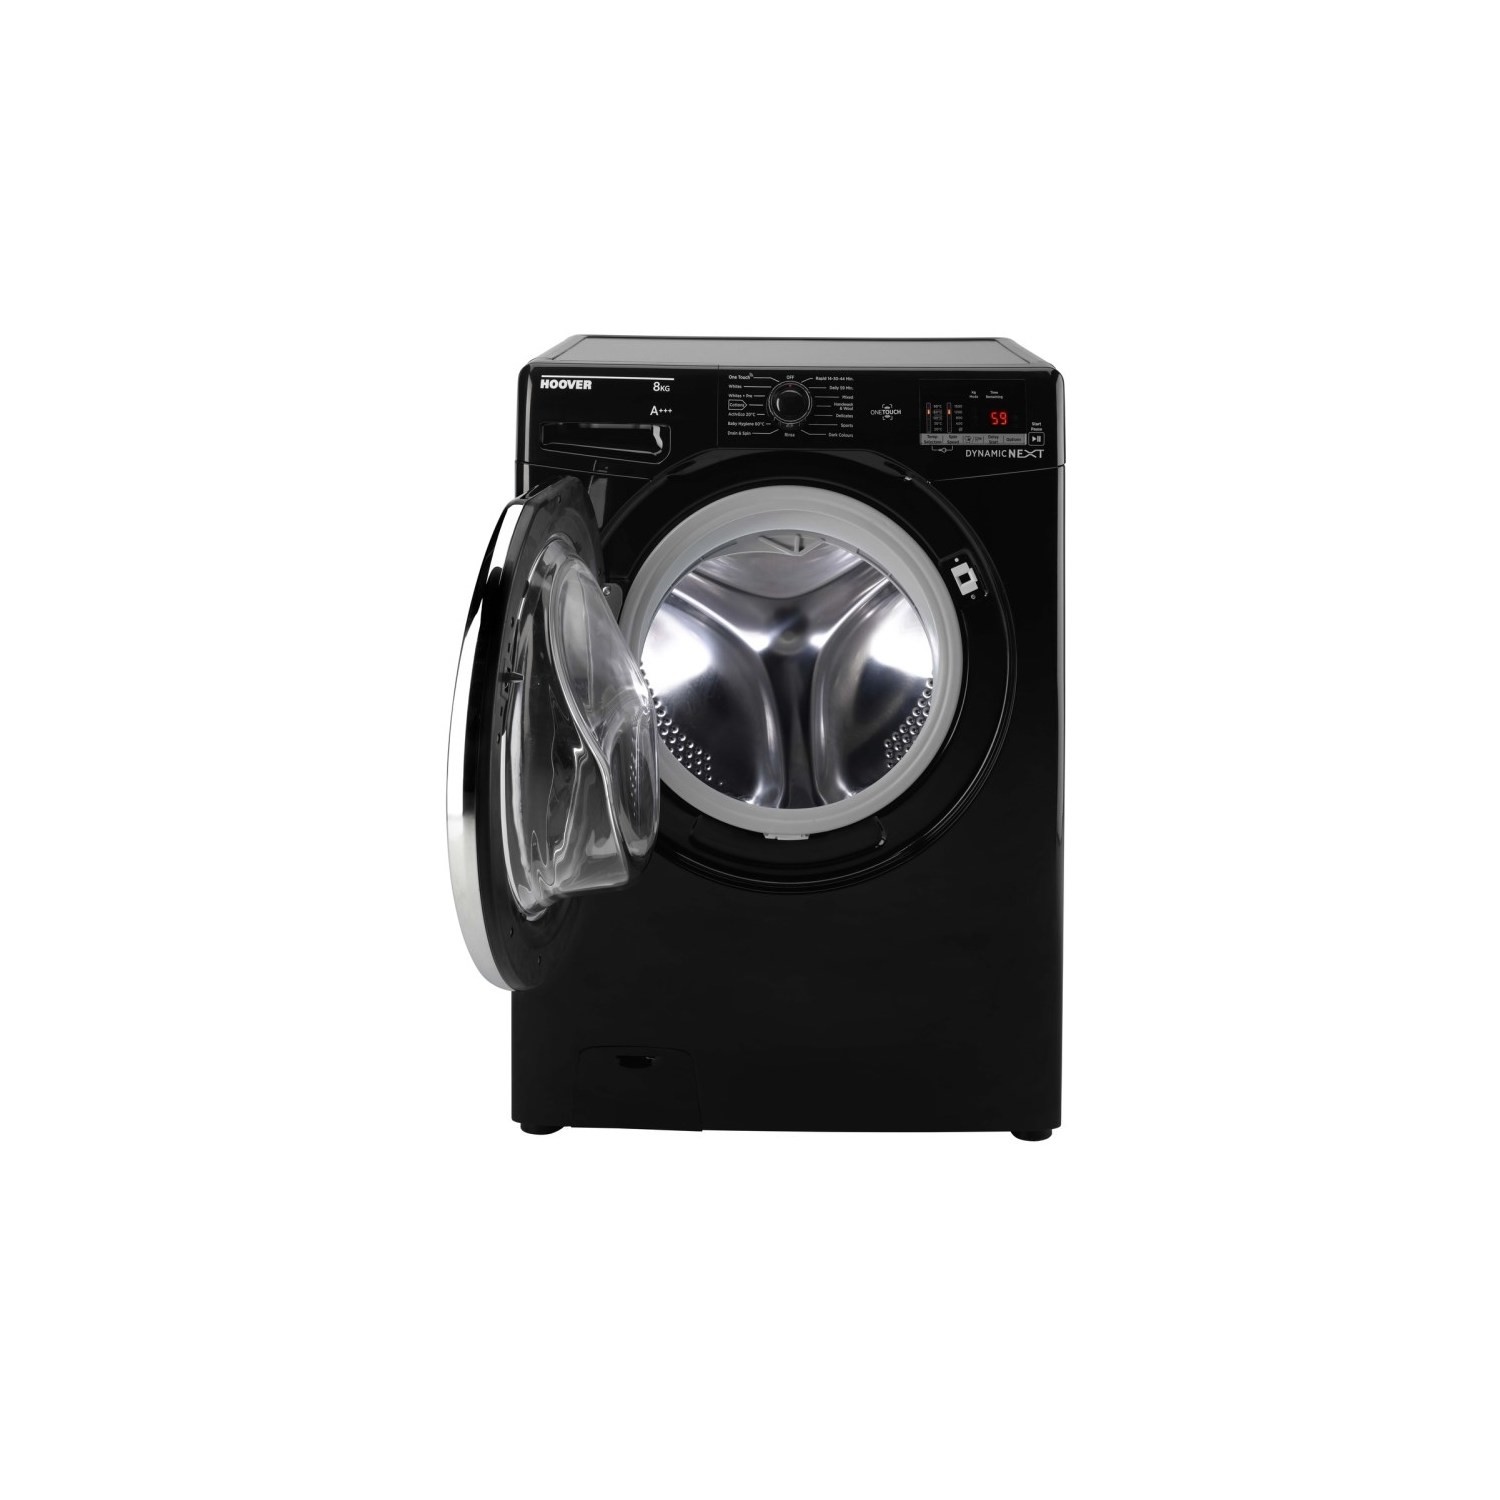 DXOC68C3B 8KG 1600 Spin One Touch Washing Machine